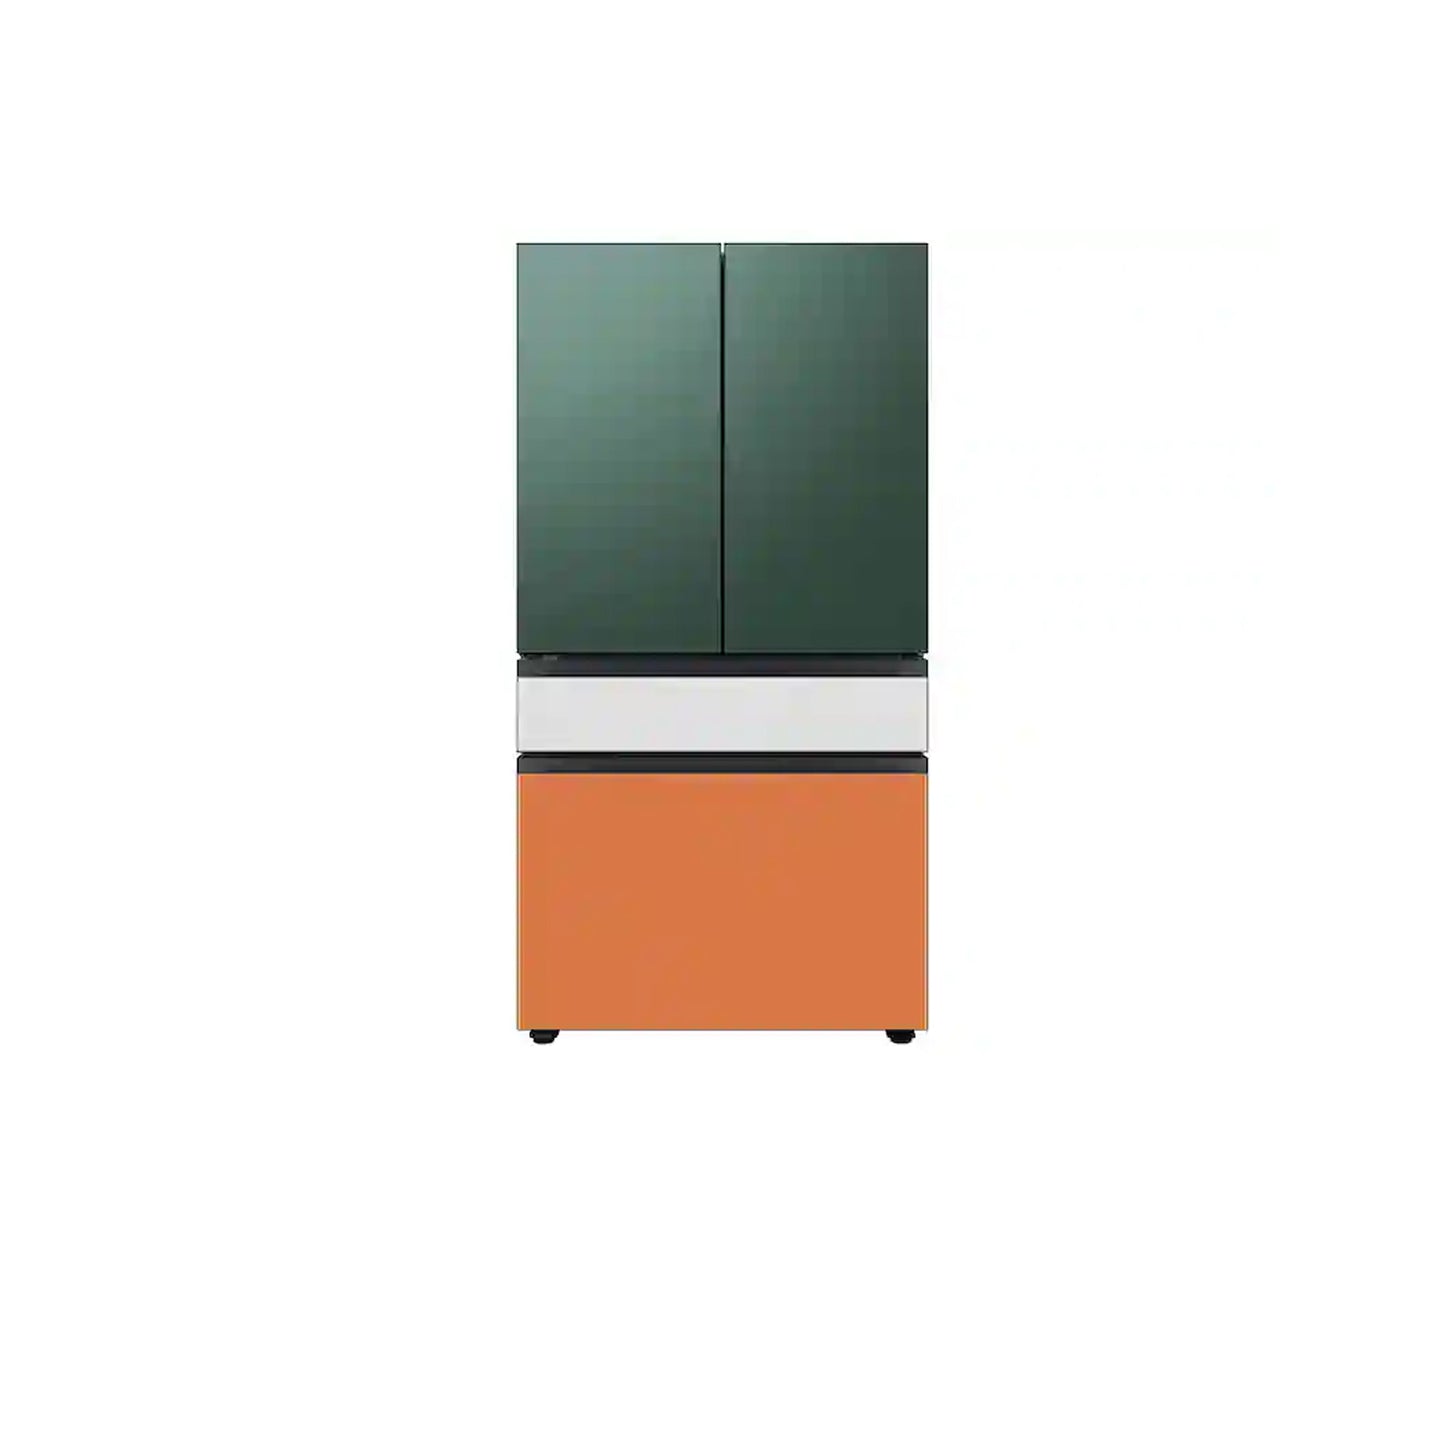 ثلاجة بباب فرنسي مصممة حسب الطلب بأربعة أبواب (23 قدمًا مكعبًا) مع ألوان لوحة الباب القابلة للتخصيص ومركز المشروبات™ باللون الأخضر الزمردي. 